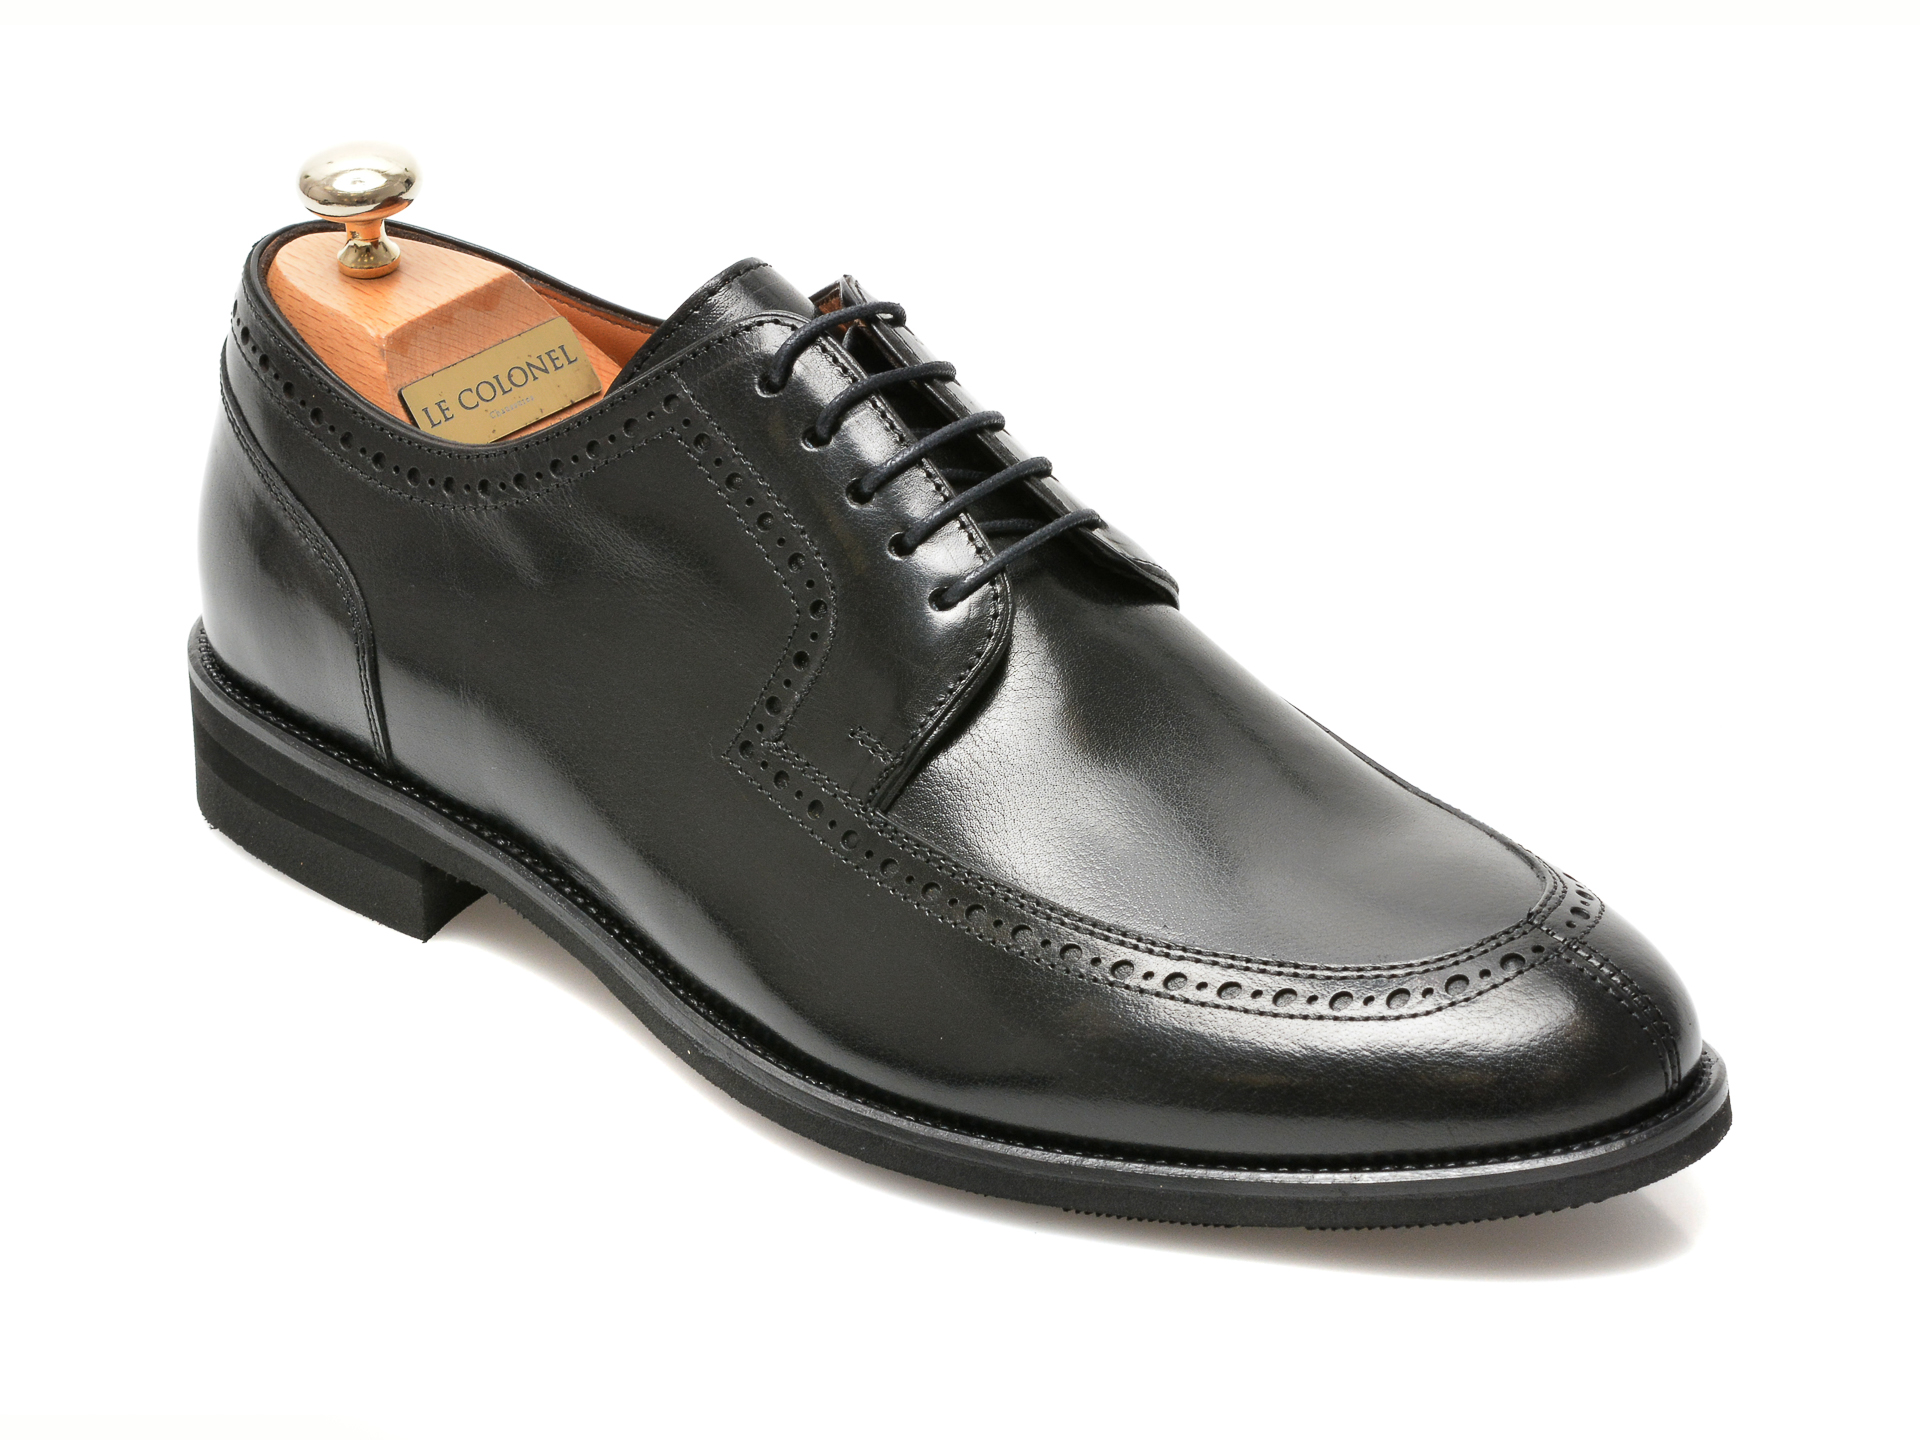 Pantofi LE COLONEL negri, 45279, din piele naturala Le Colonel